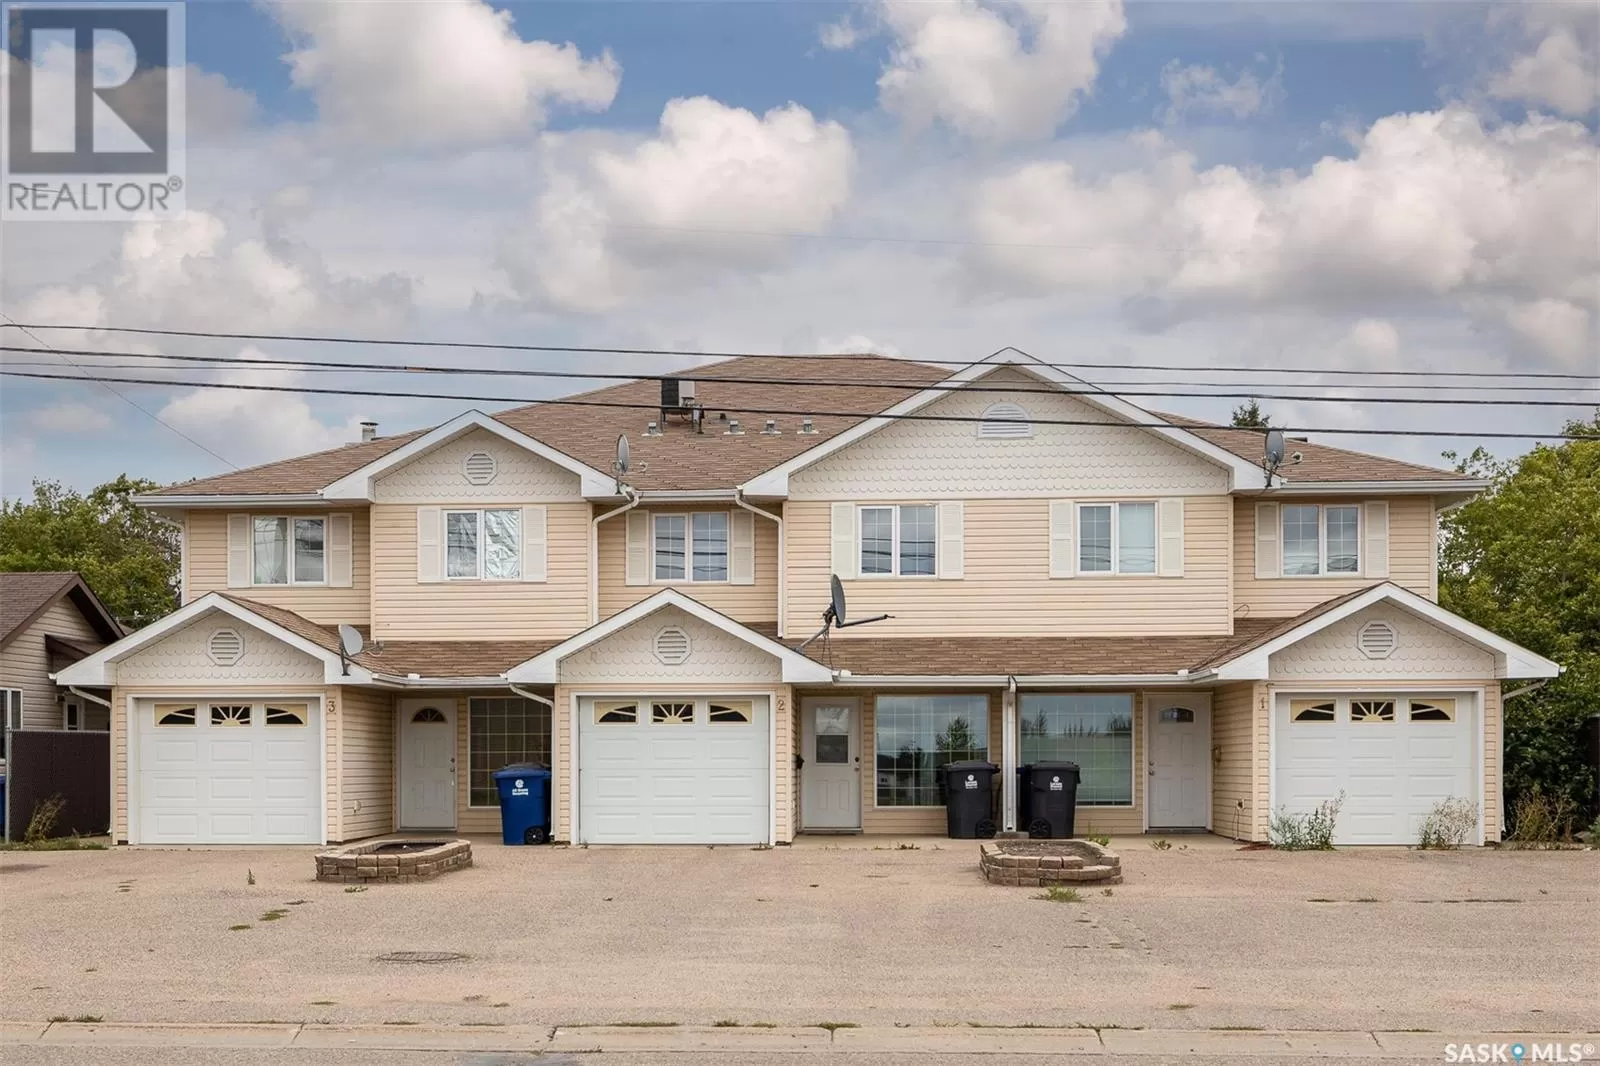 Row / Townhouse for rent: 2 506 Centennial Boulevard, Warman, Saskatchewan S0K 4S0